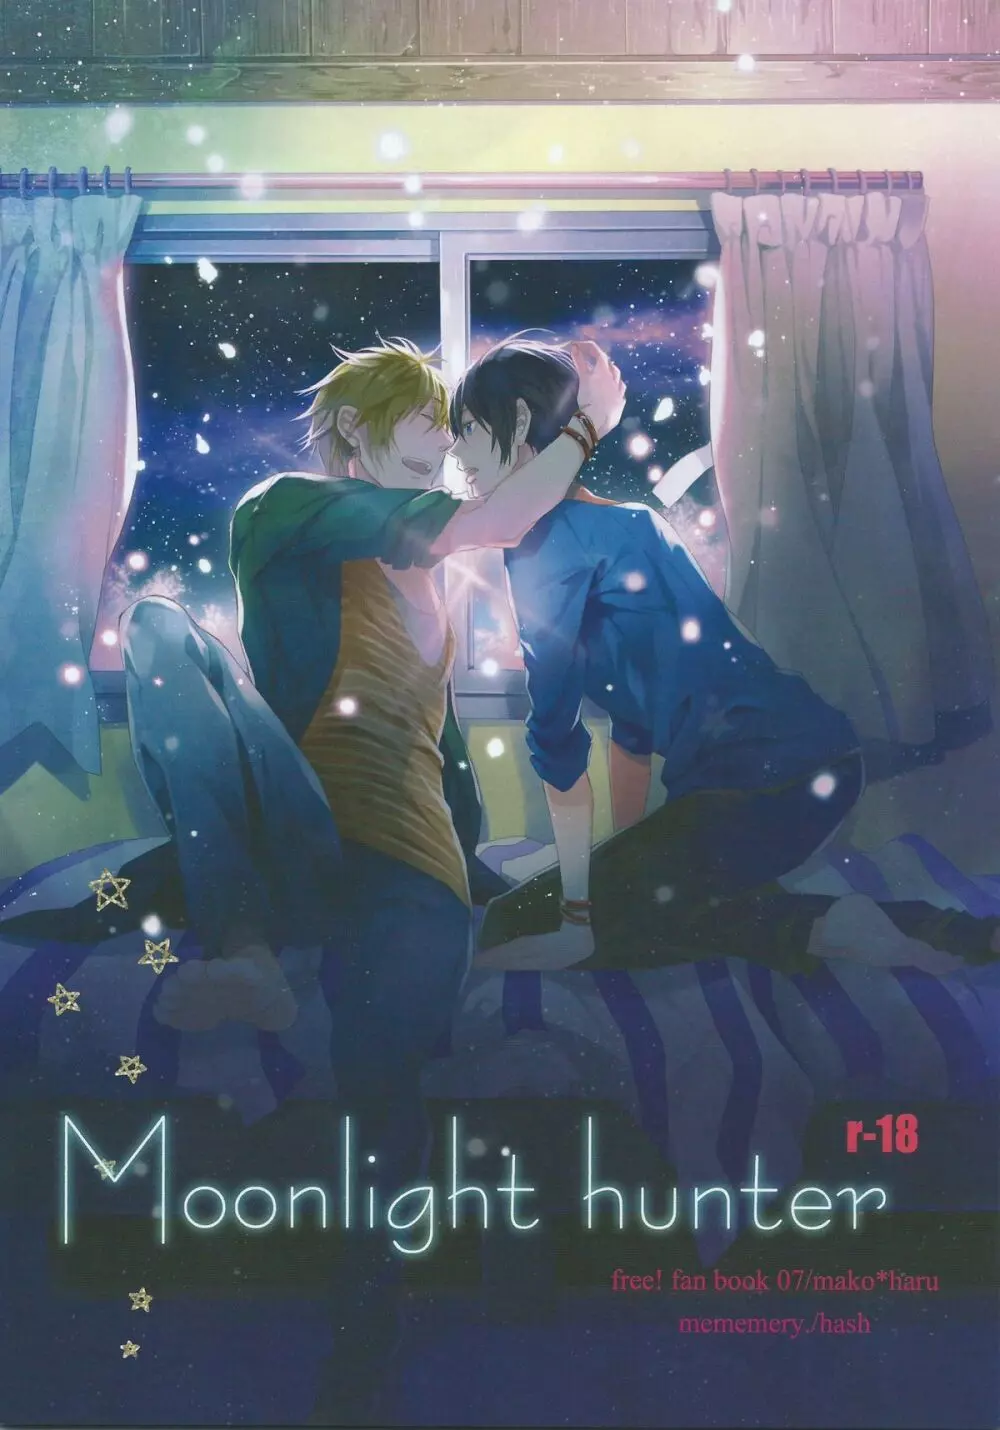 Moonlight hunter - page1